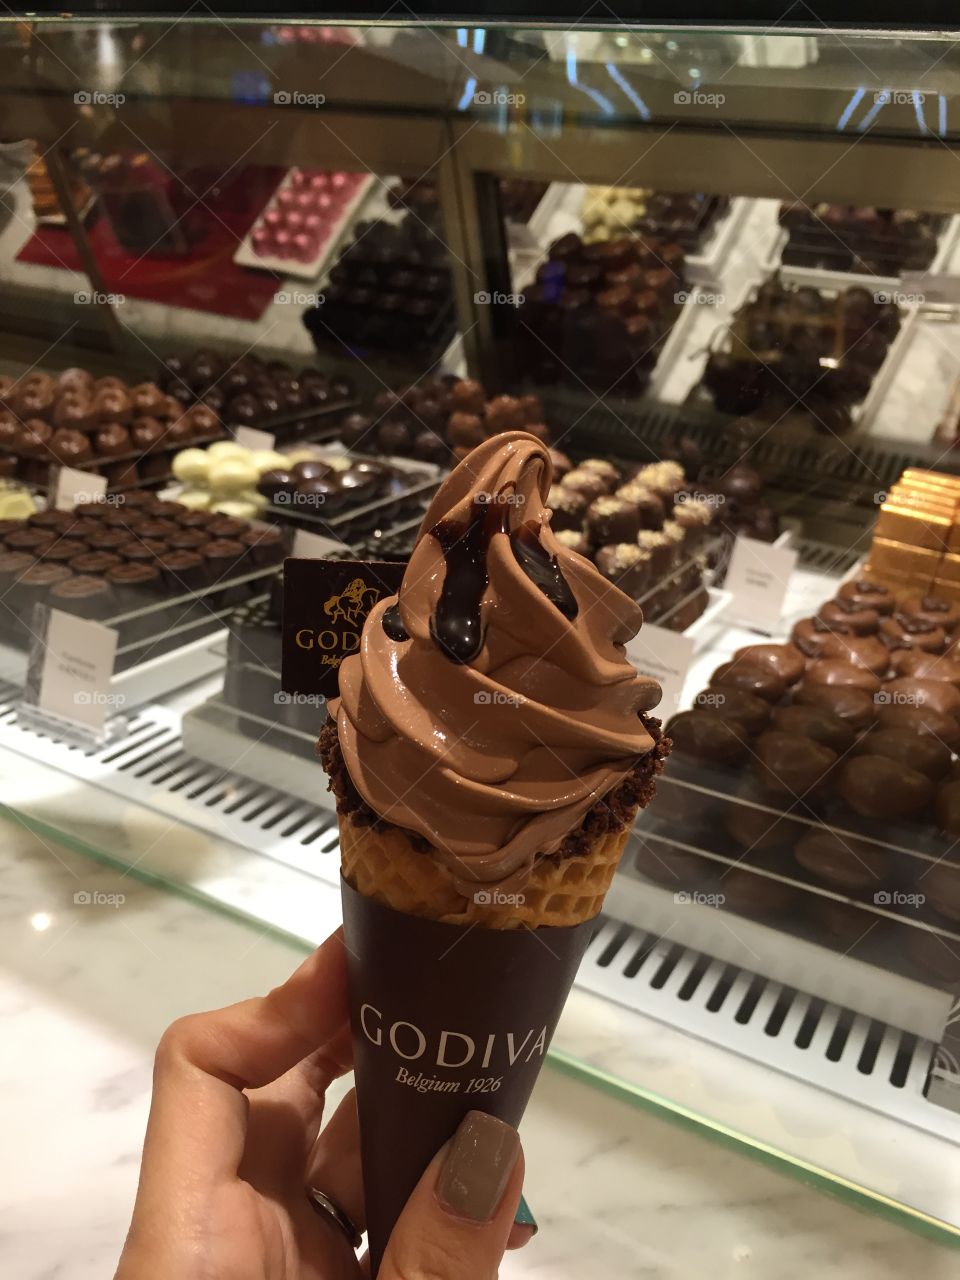 Godiva ice cream